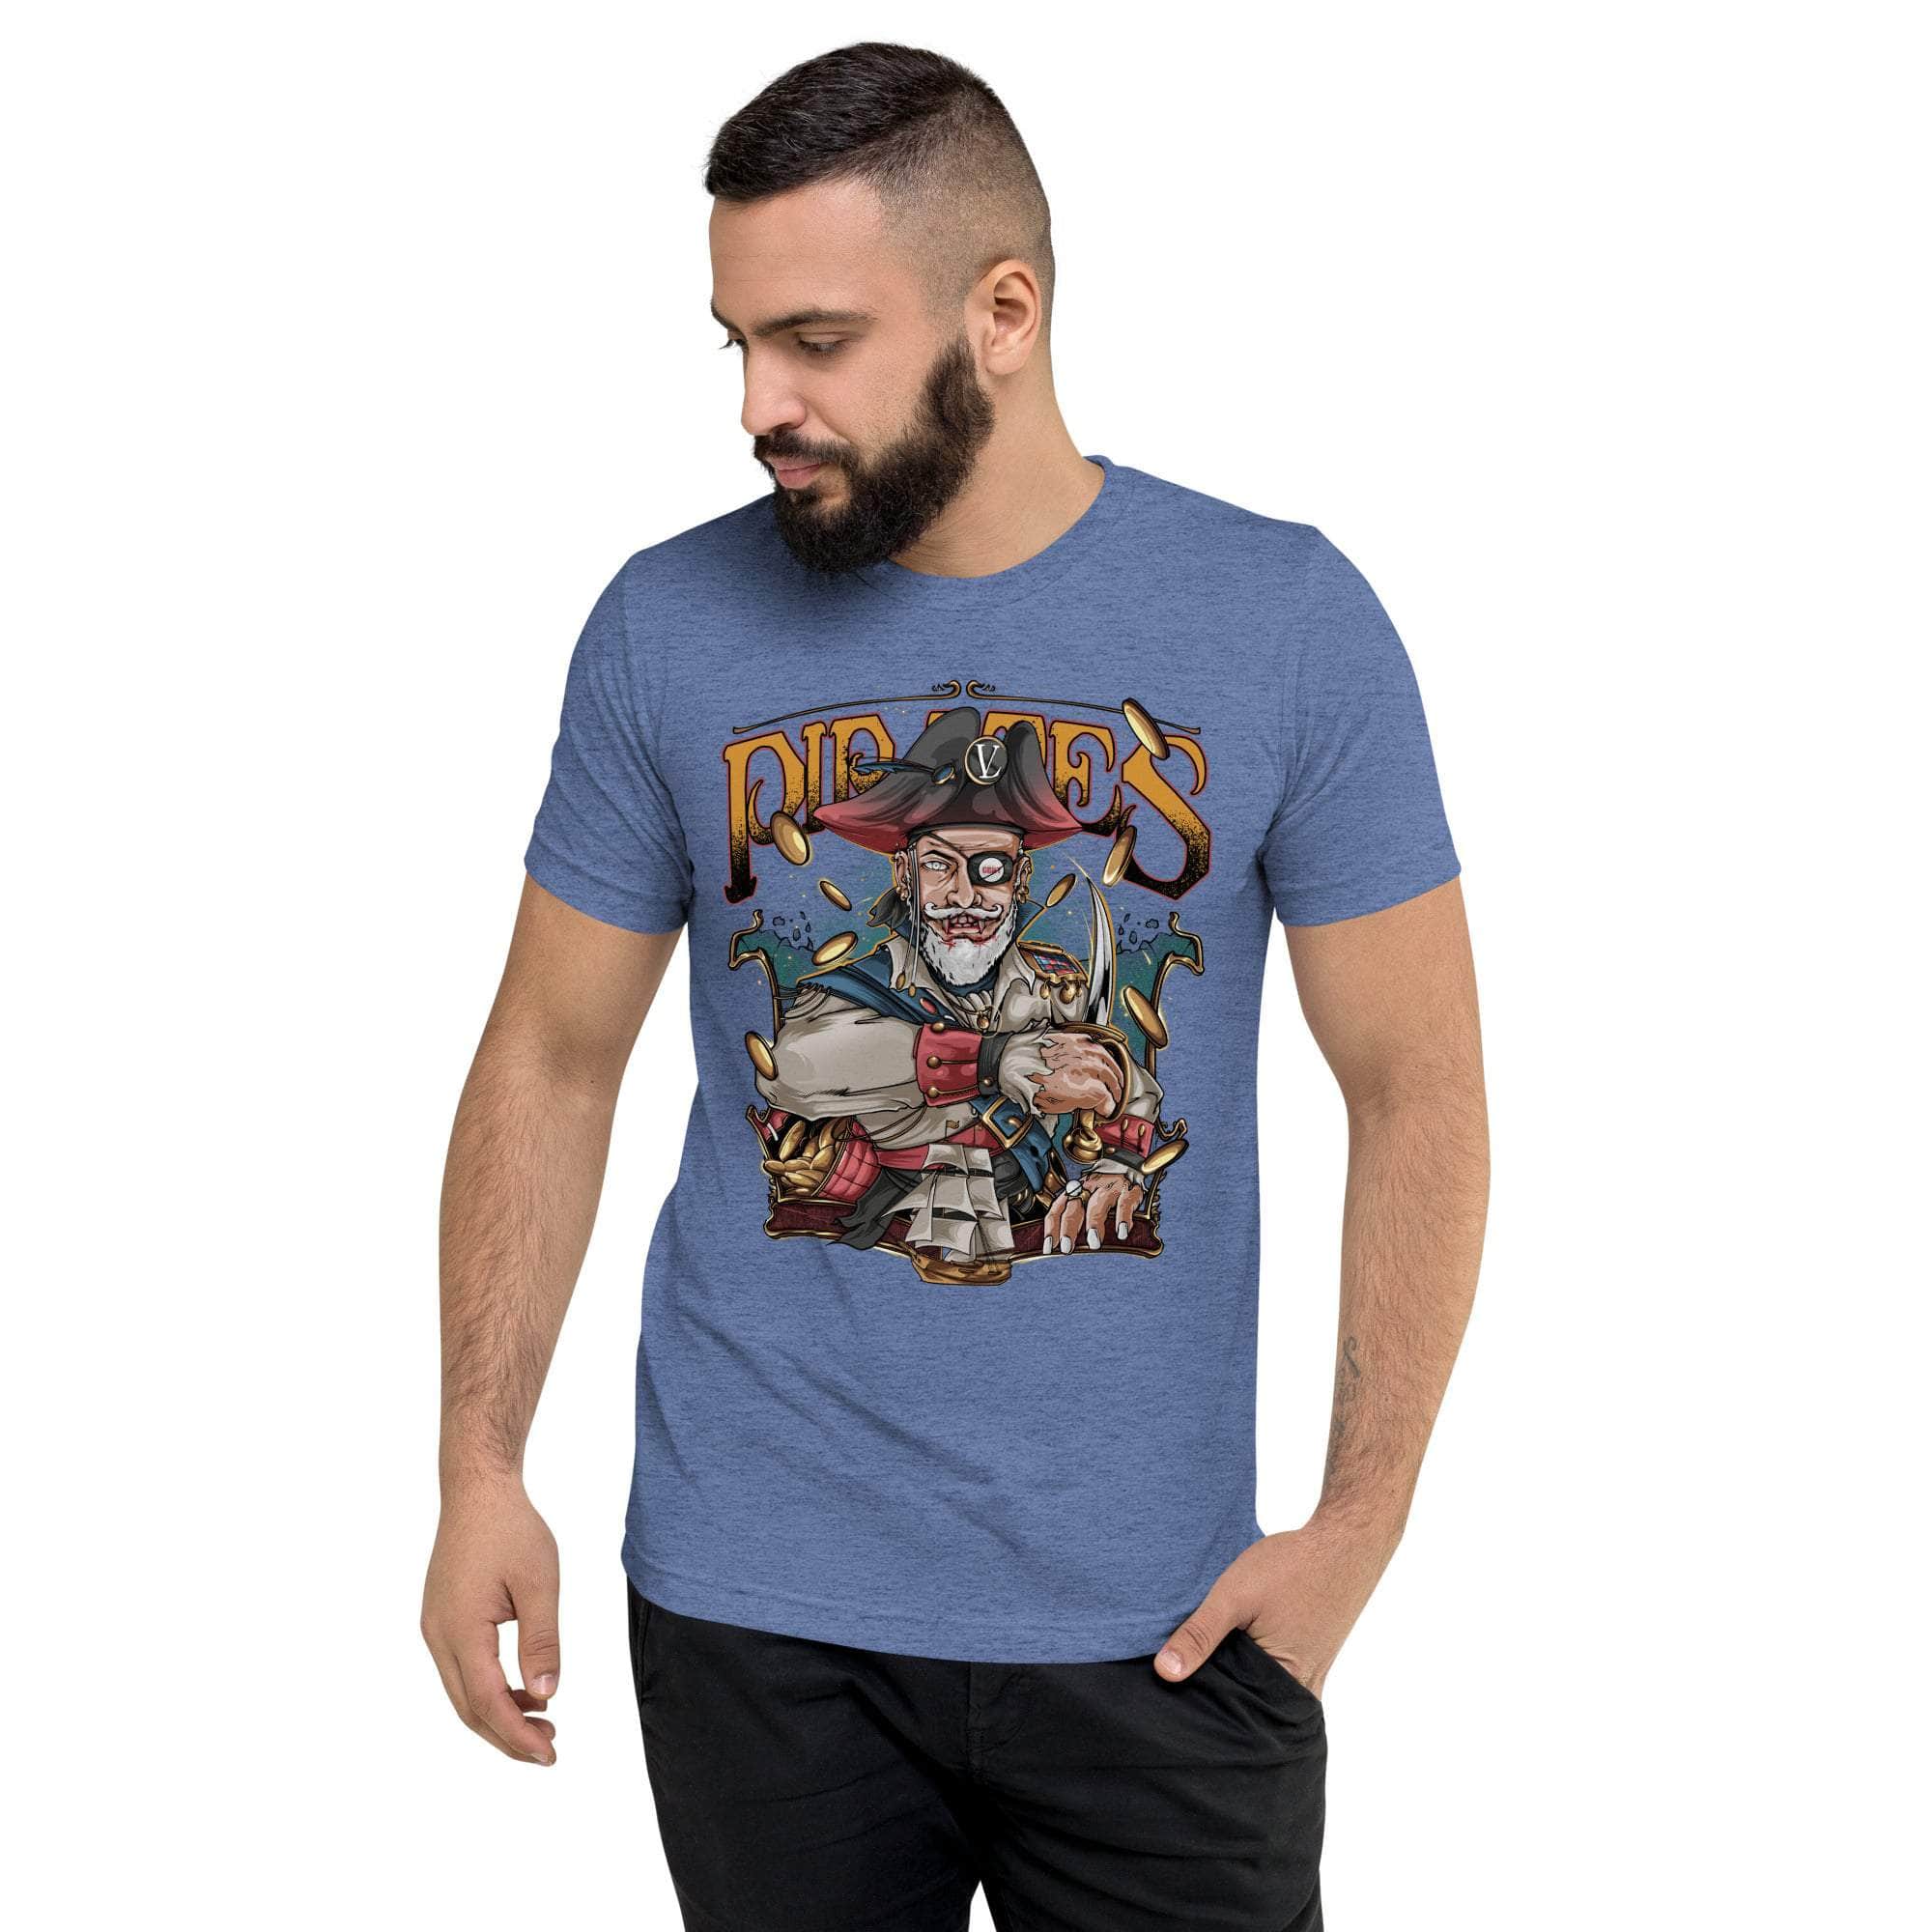 GBNY Blue Triblend / XS Vamp Life X GBNY "Pirates King" T-shirt - Men's 4461701_6488